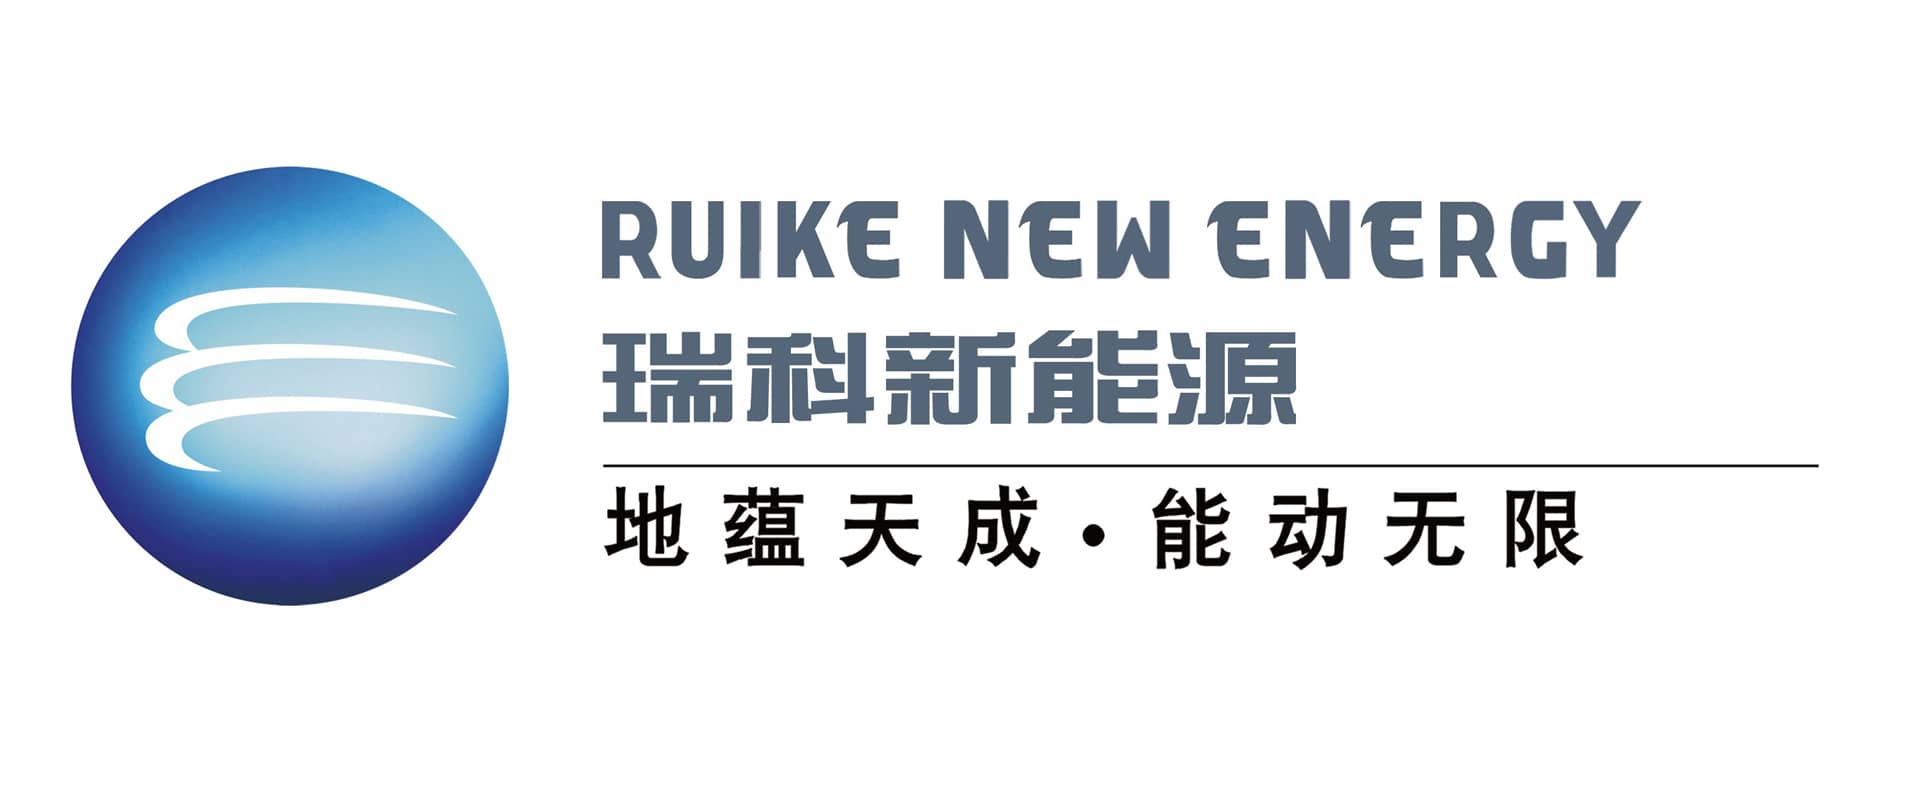 ruike new energy logo